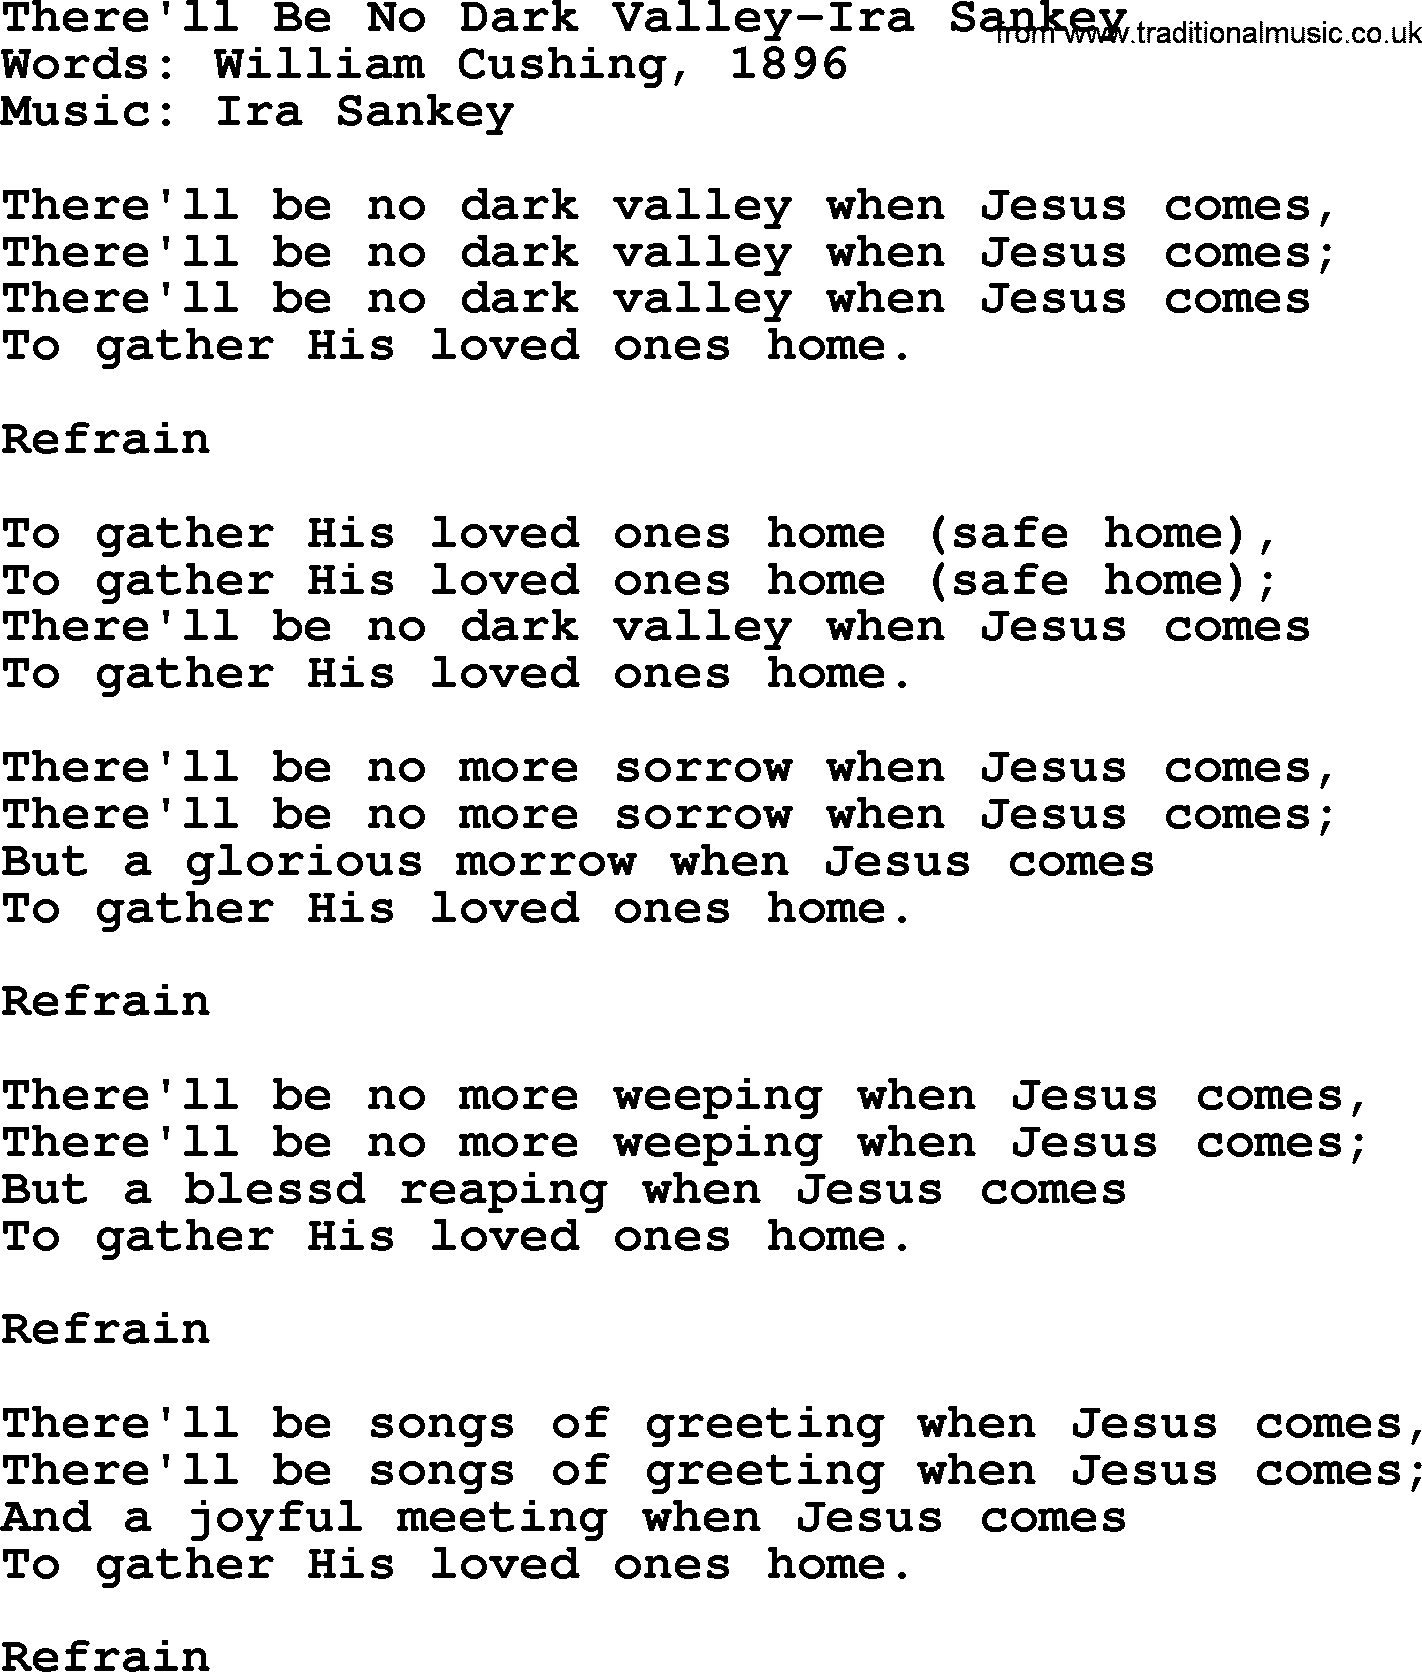 Ira Sankey hymn: There'll Be No Dark Valley-Ira Sankey, lyrics